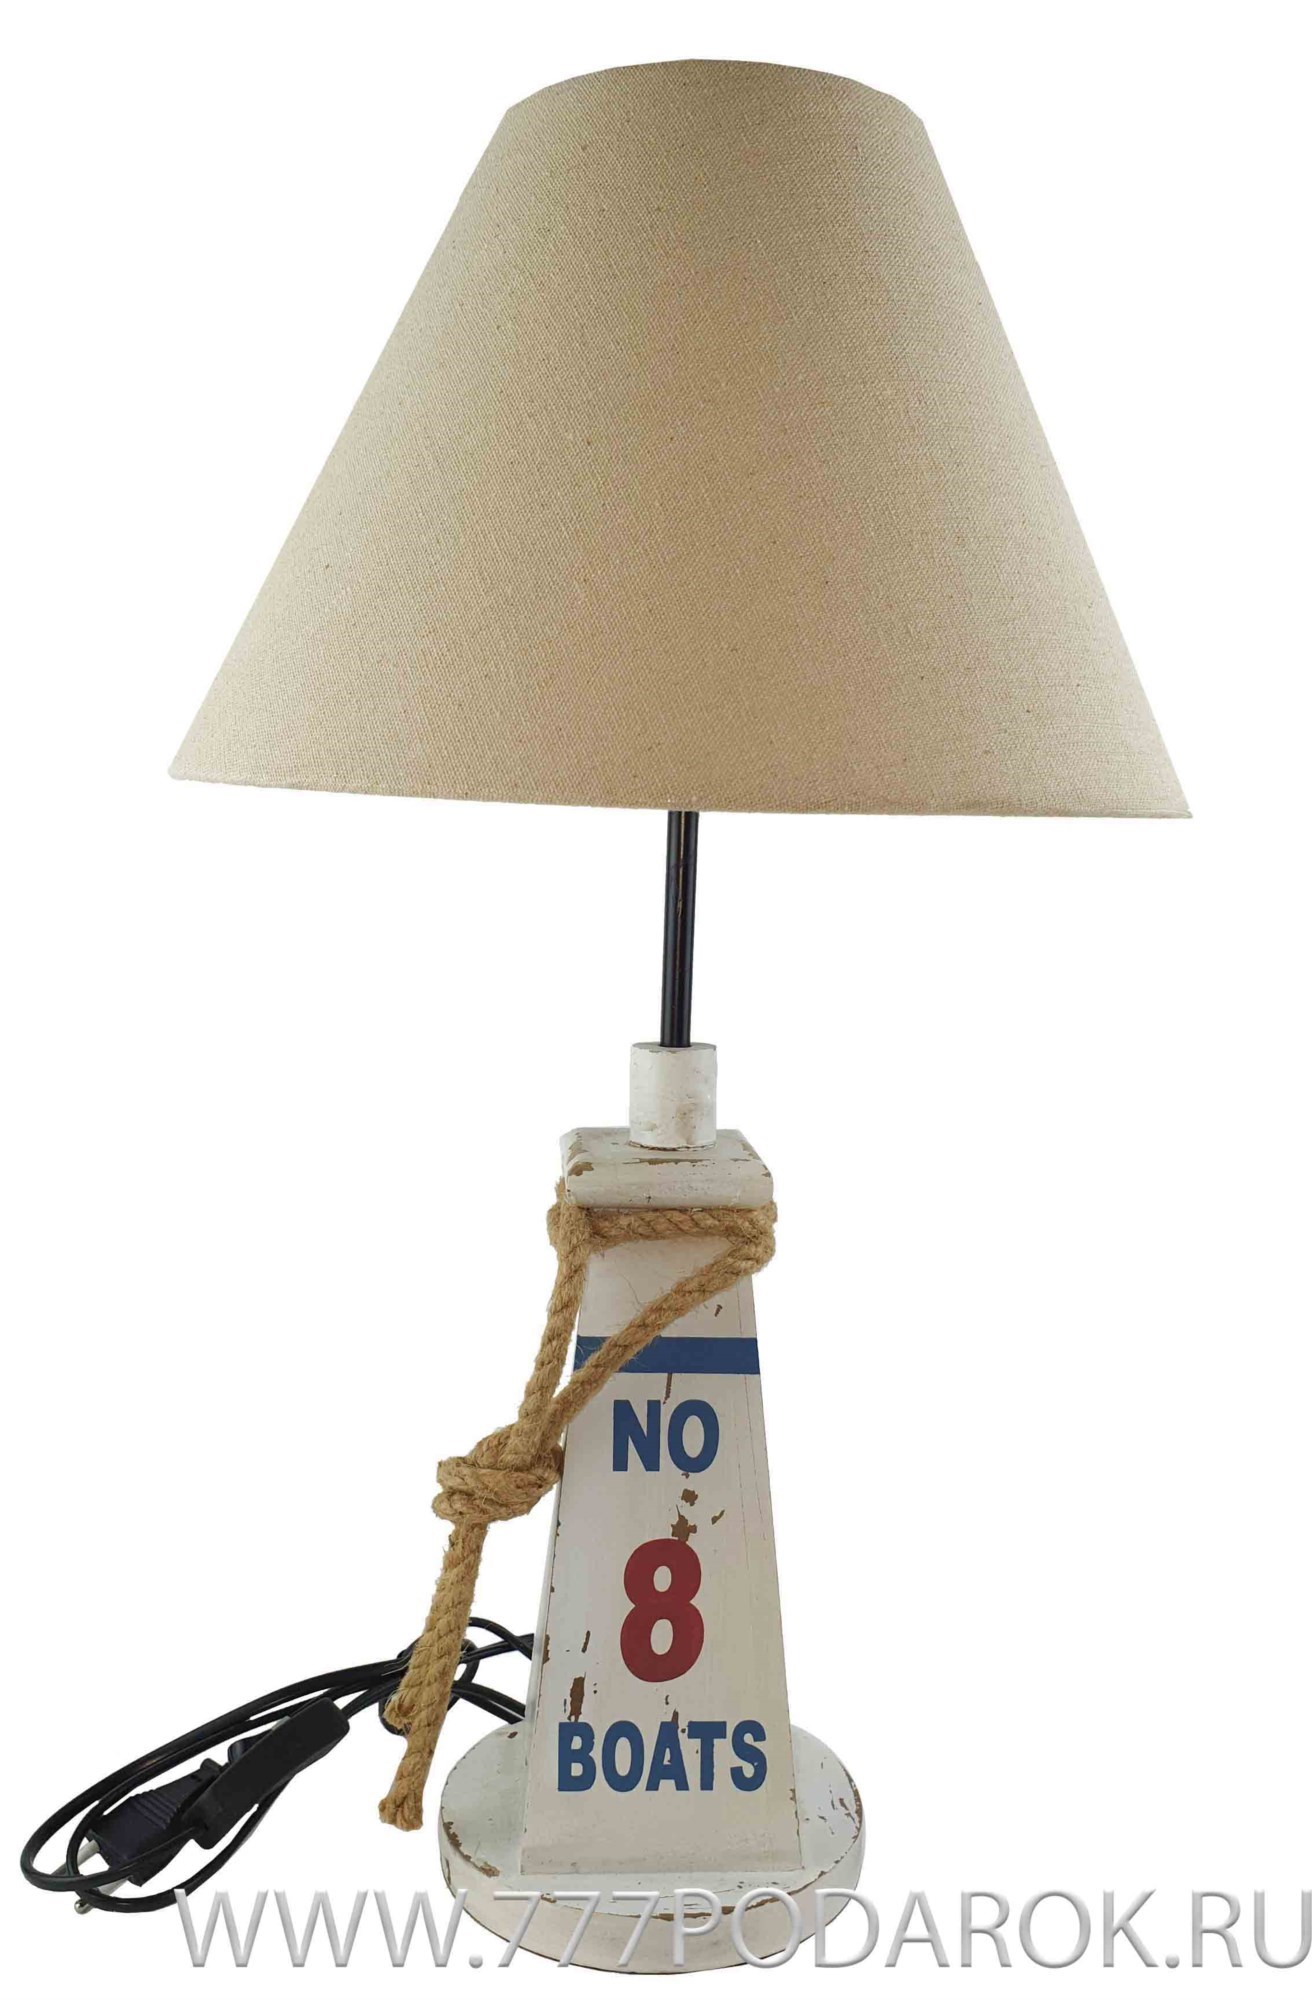 Лампа в морском стиле 